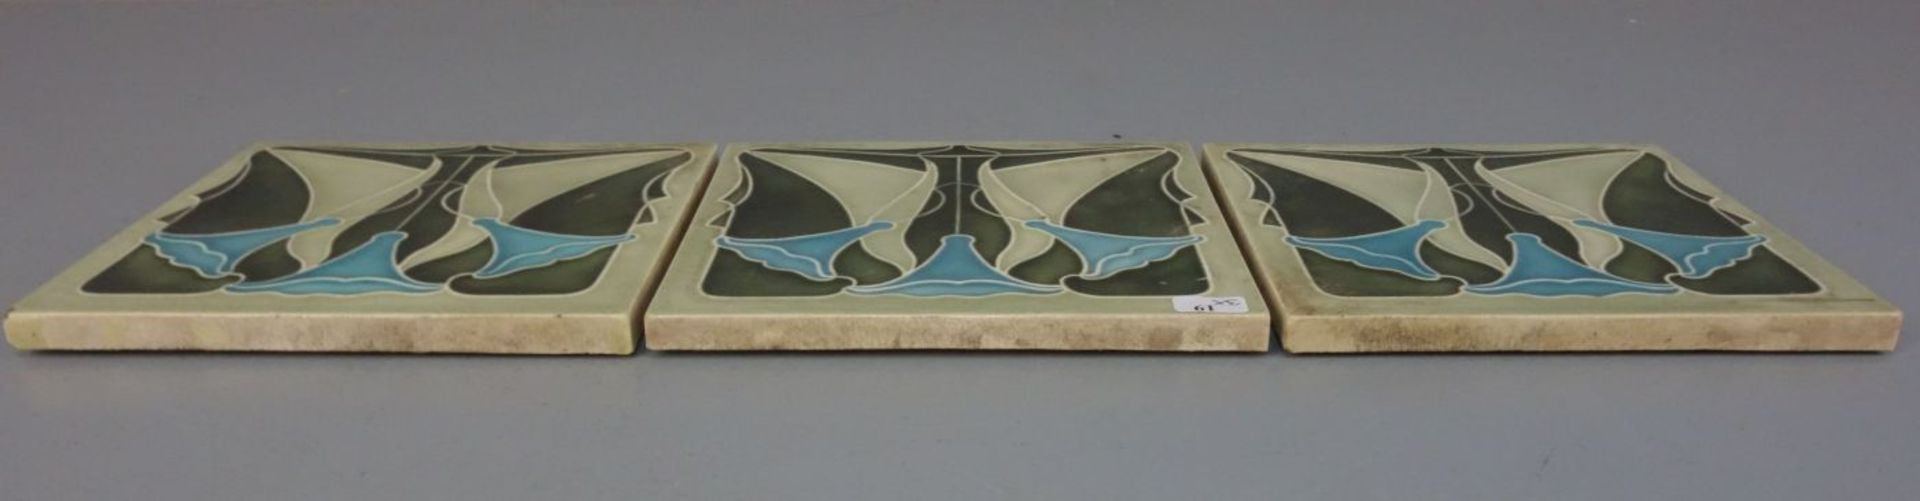 3 JUGENDSTILFLIESEN / art nouveau tiles, heller Scherben, um 1900, dreifarbig glasiert mit - Bild 5 aus 7